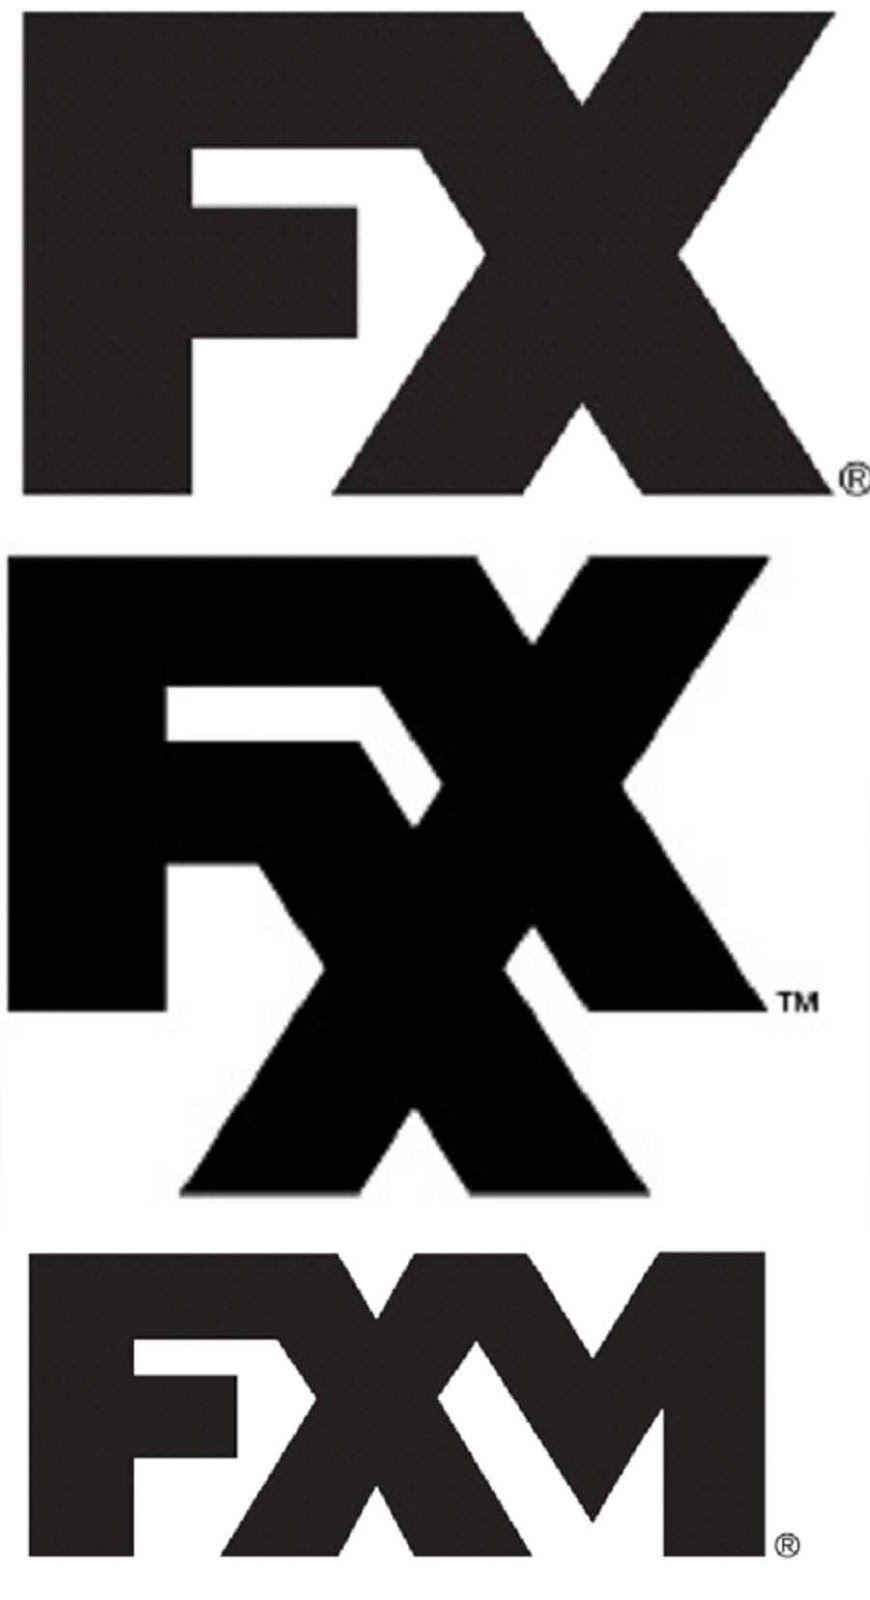 FXX Logo - Fx Logos